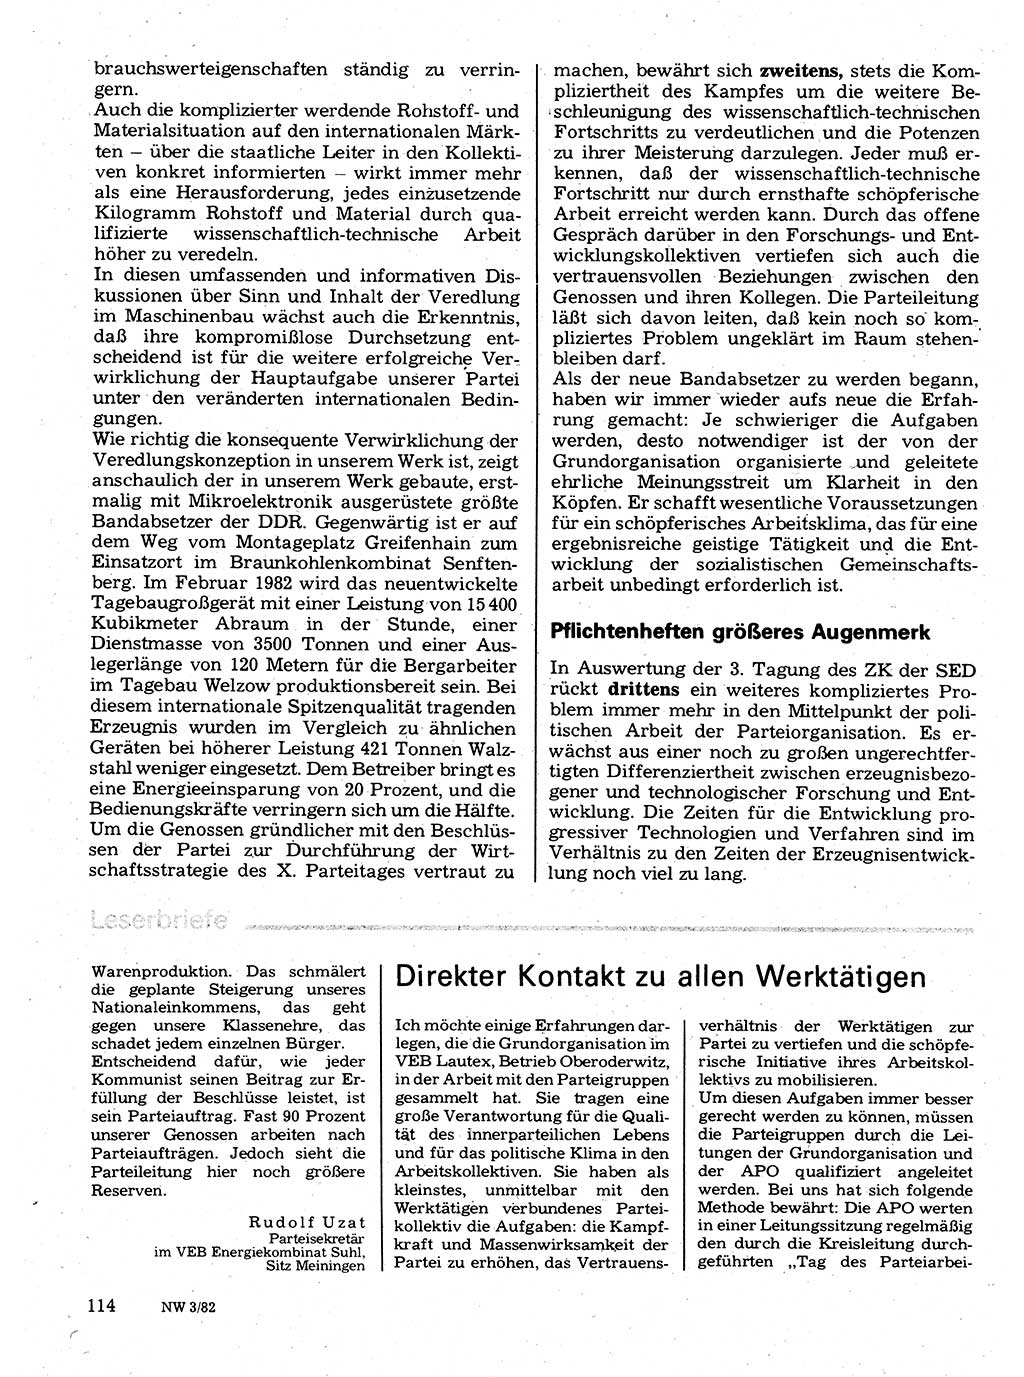 Neuer Weg (NW), Organ des Zentralkomitees (ZK) der SED (Sozialistische Einheitspartei Deutschlands) für Fragen des Parteilebens, 37. Jahrgang [Deutsche Demokratische Republik (DDR)] 1982, Seite 114 (NW ZK SED DDR 1982, S. 114)